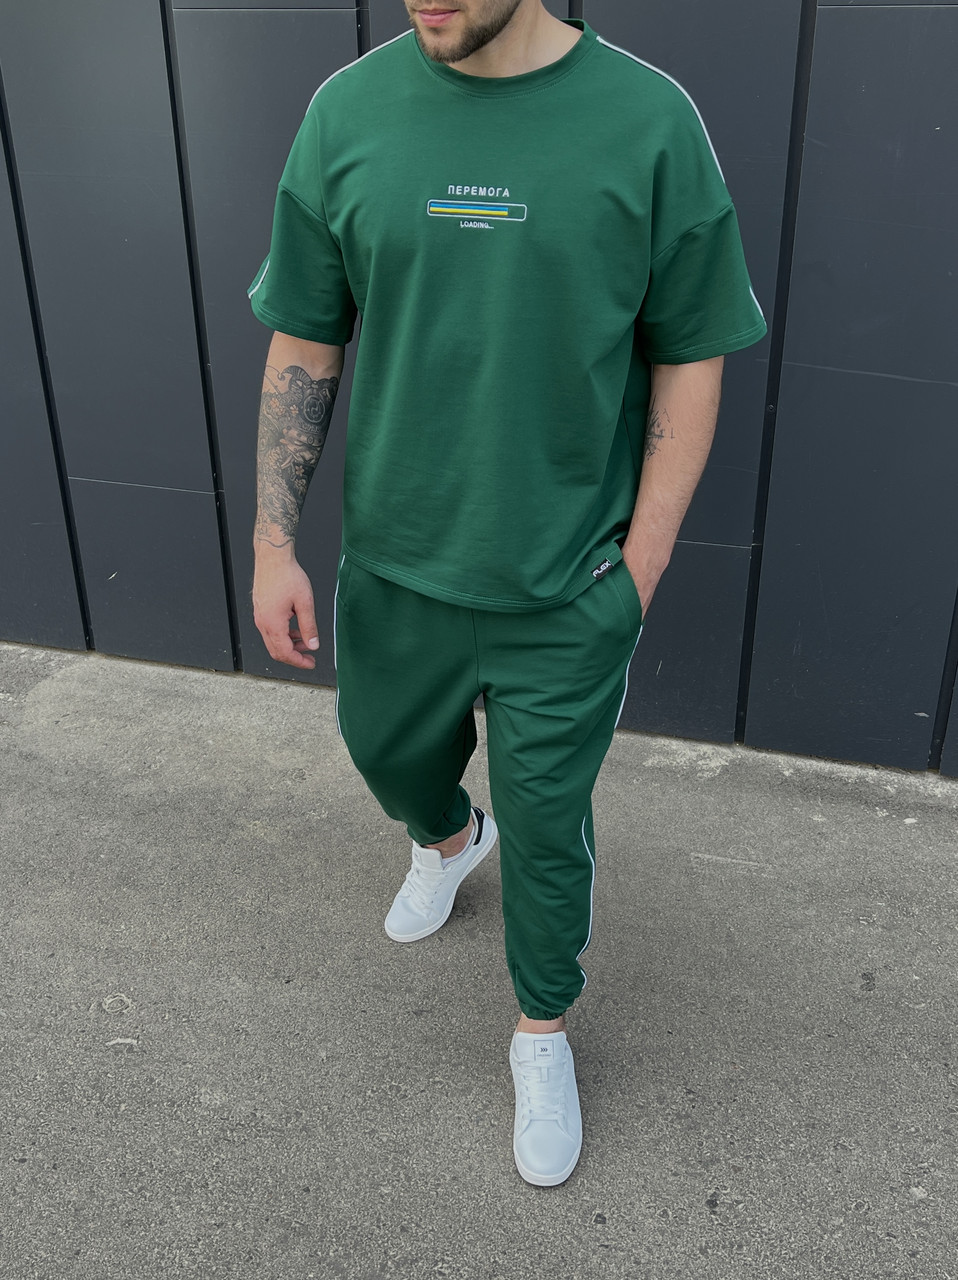 Летний комплект футболка и штаны мужские зеленый модель Перемога TURWEAR - Фото 2